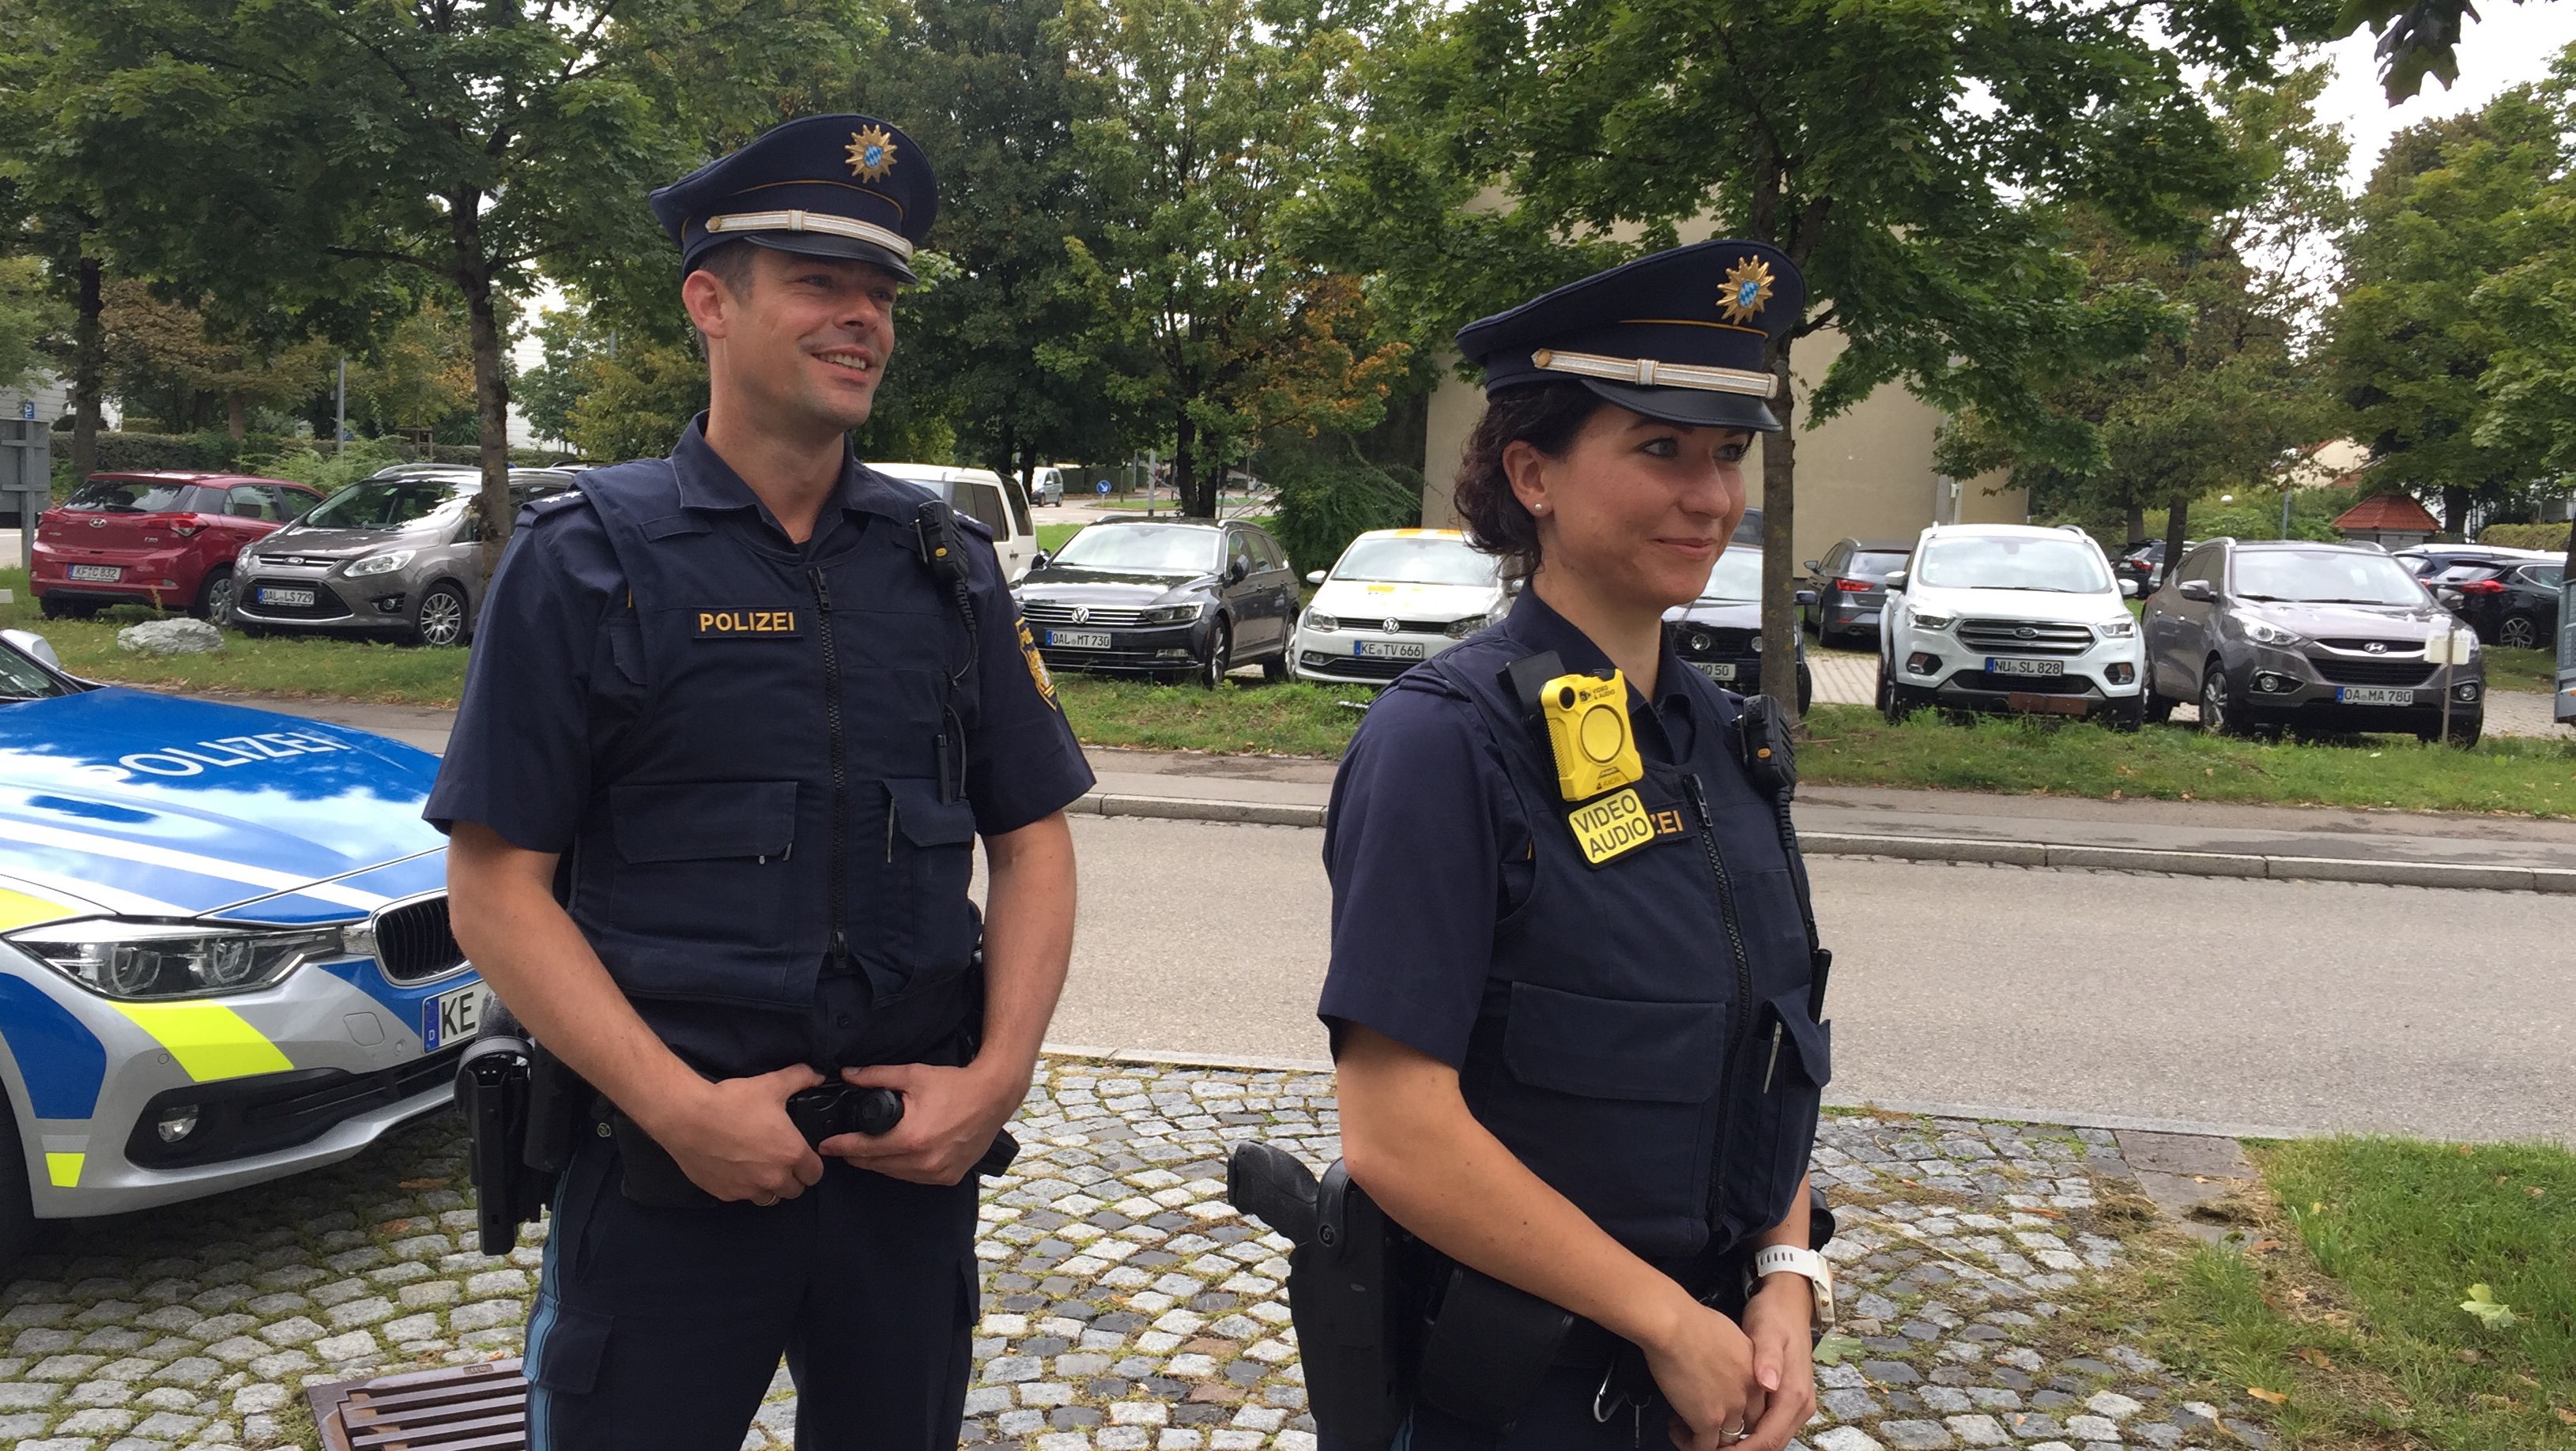 Polizei Bodycams Positive Bilanz In Schwaben Br24